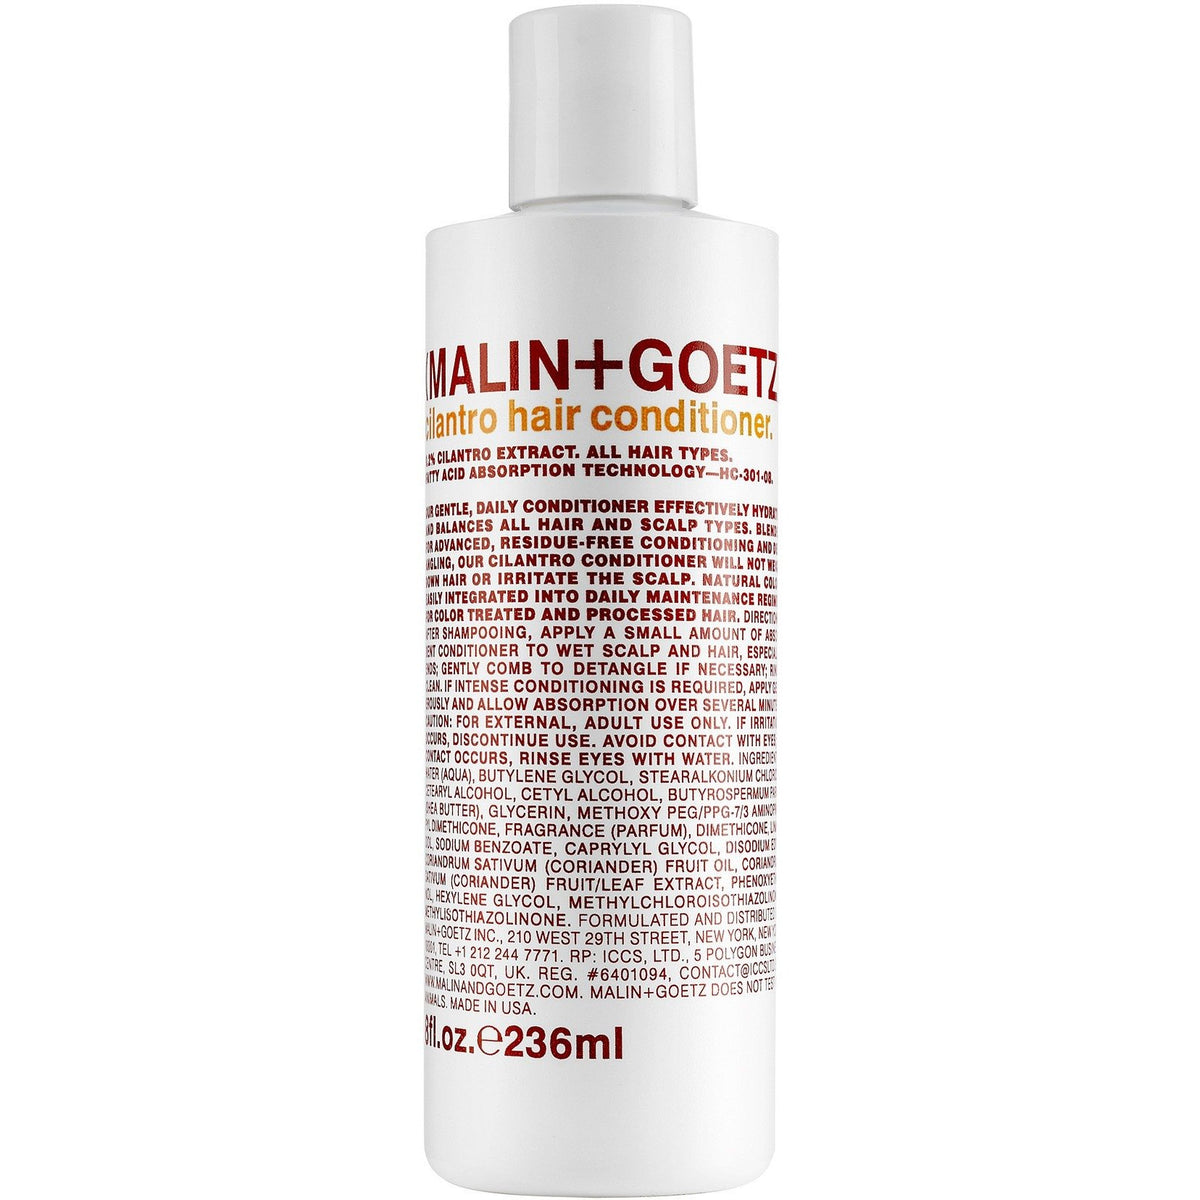 Malin + Goetz Cilantro Hair Conditioner - Franklin & Poe